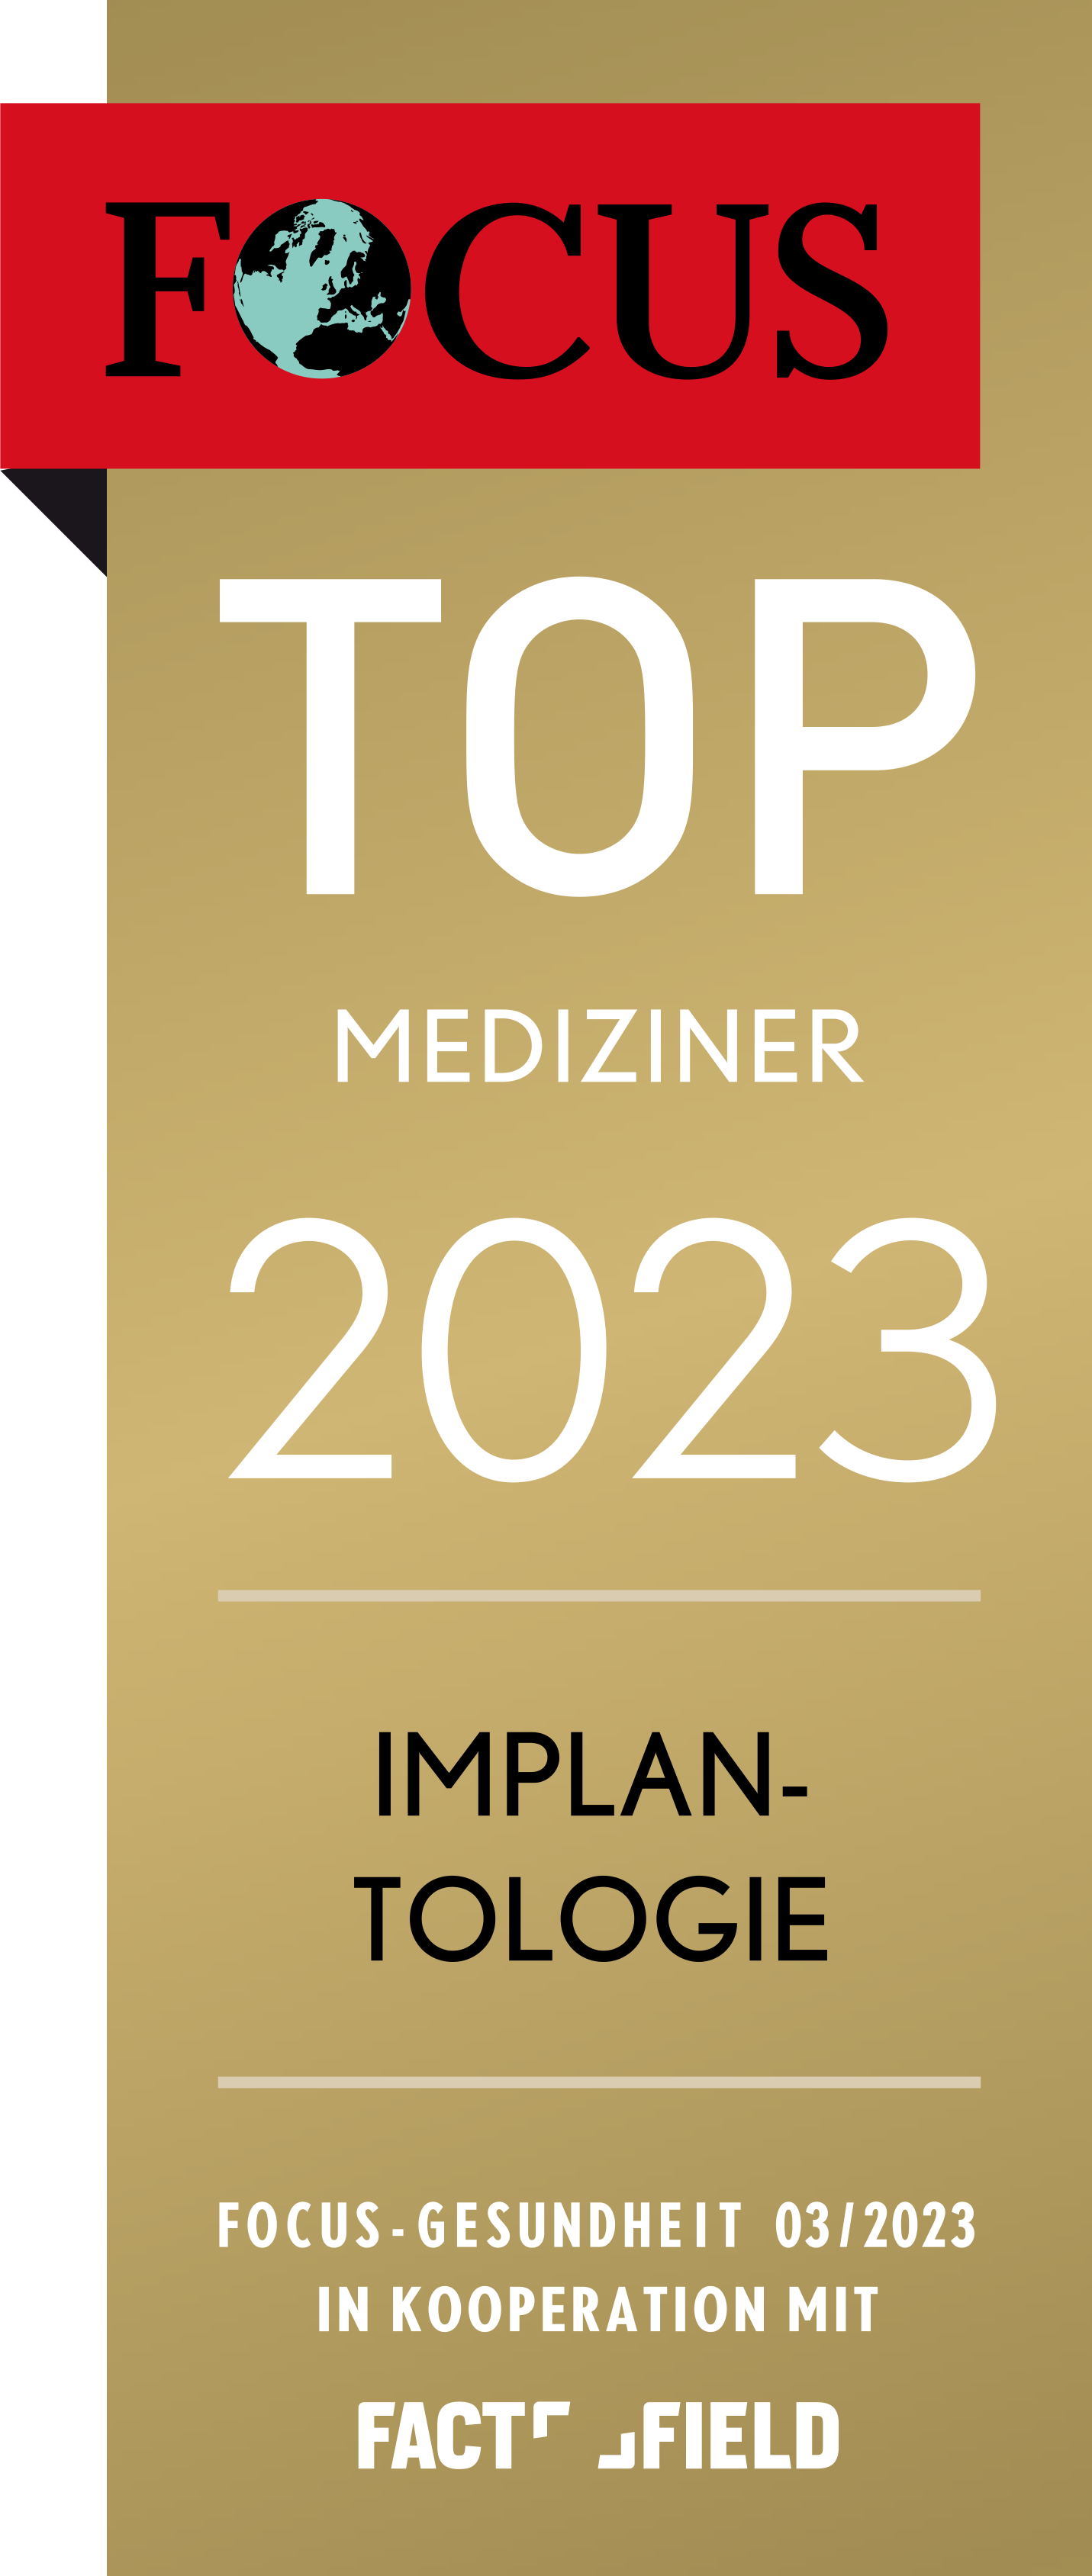 zahnarzt dr bergmann focus siegel mediziner implantologie 2023 s - Praxis Dr. med. dent. Bergmann & Kollegen | Zentrum für Zahngesundheit